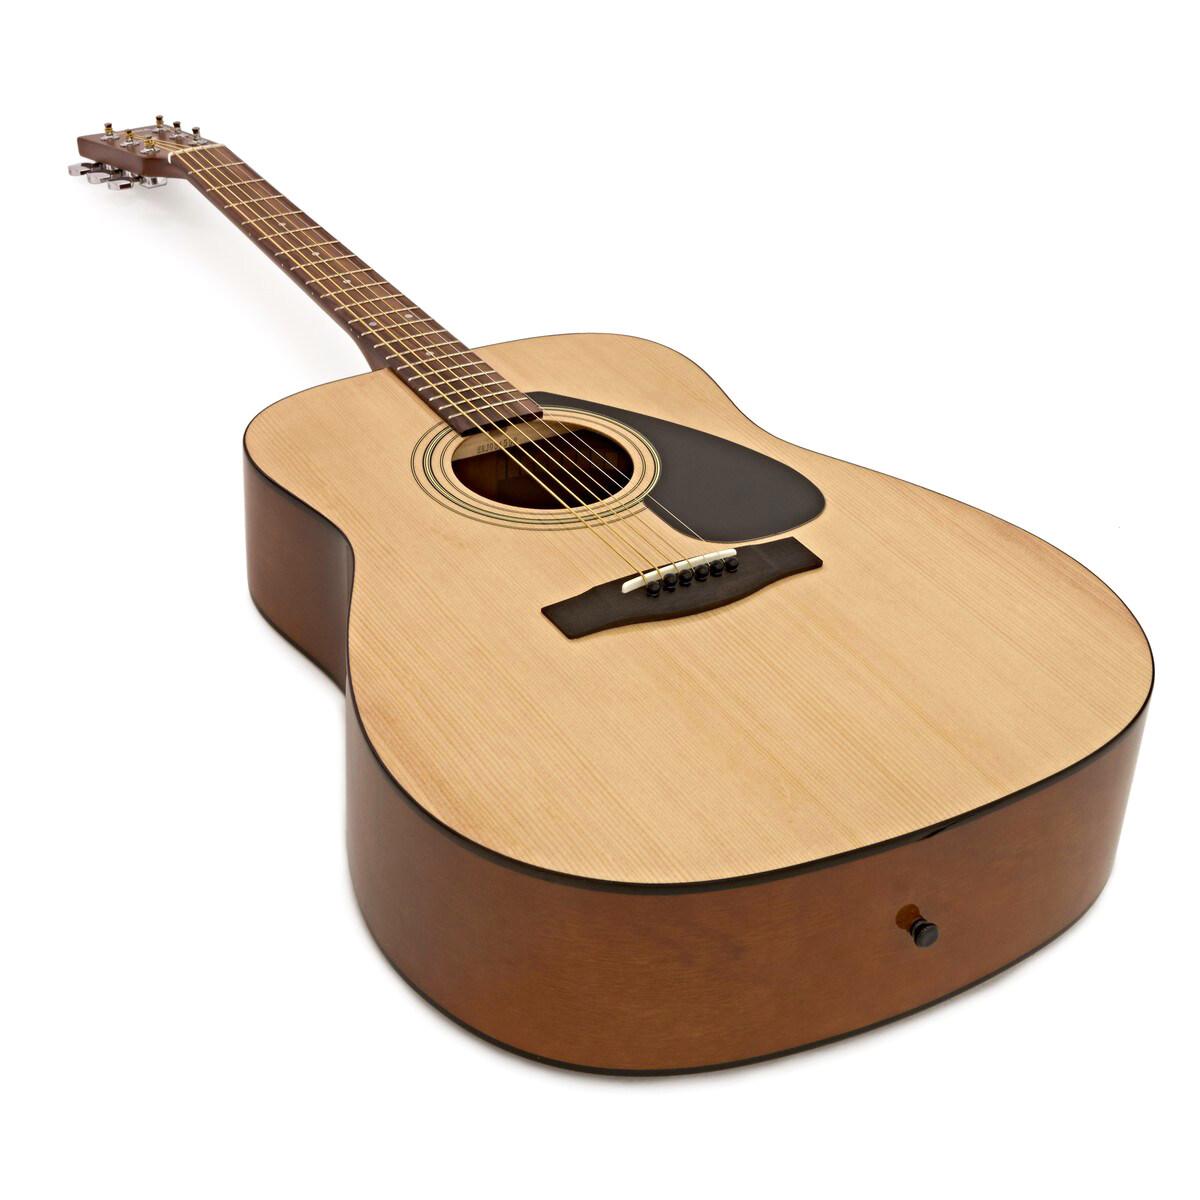 YAMAHA® F310 Acoustic Guitar กีตาร์โปร่ง 41 นิ้ว ไม้สปรูซ/เมอรันติ รุ่น F310 + แถมฟรีกระเป๋ากีตาร์ของแท้ Yamaha ** ขายดีที่สุด **